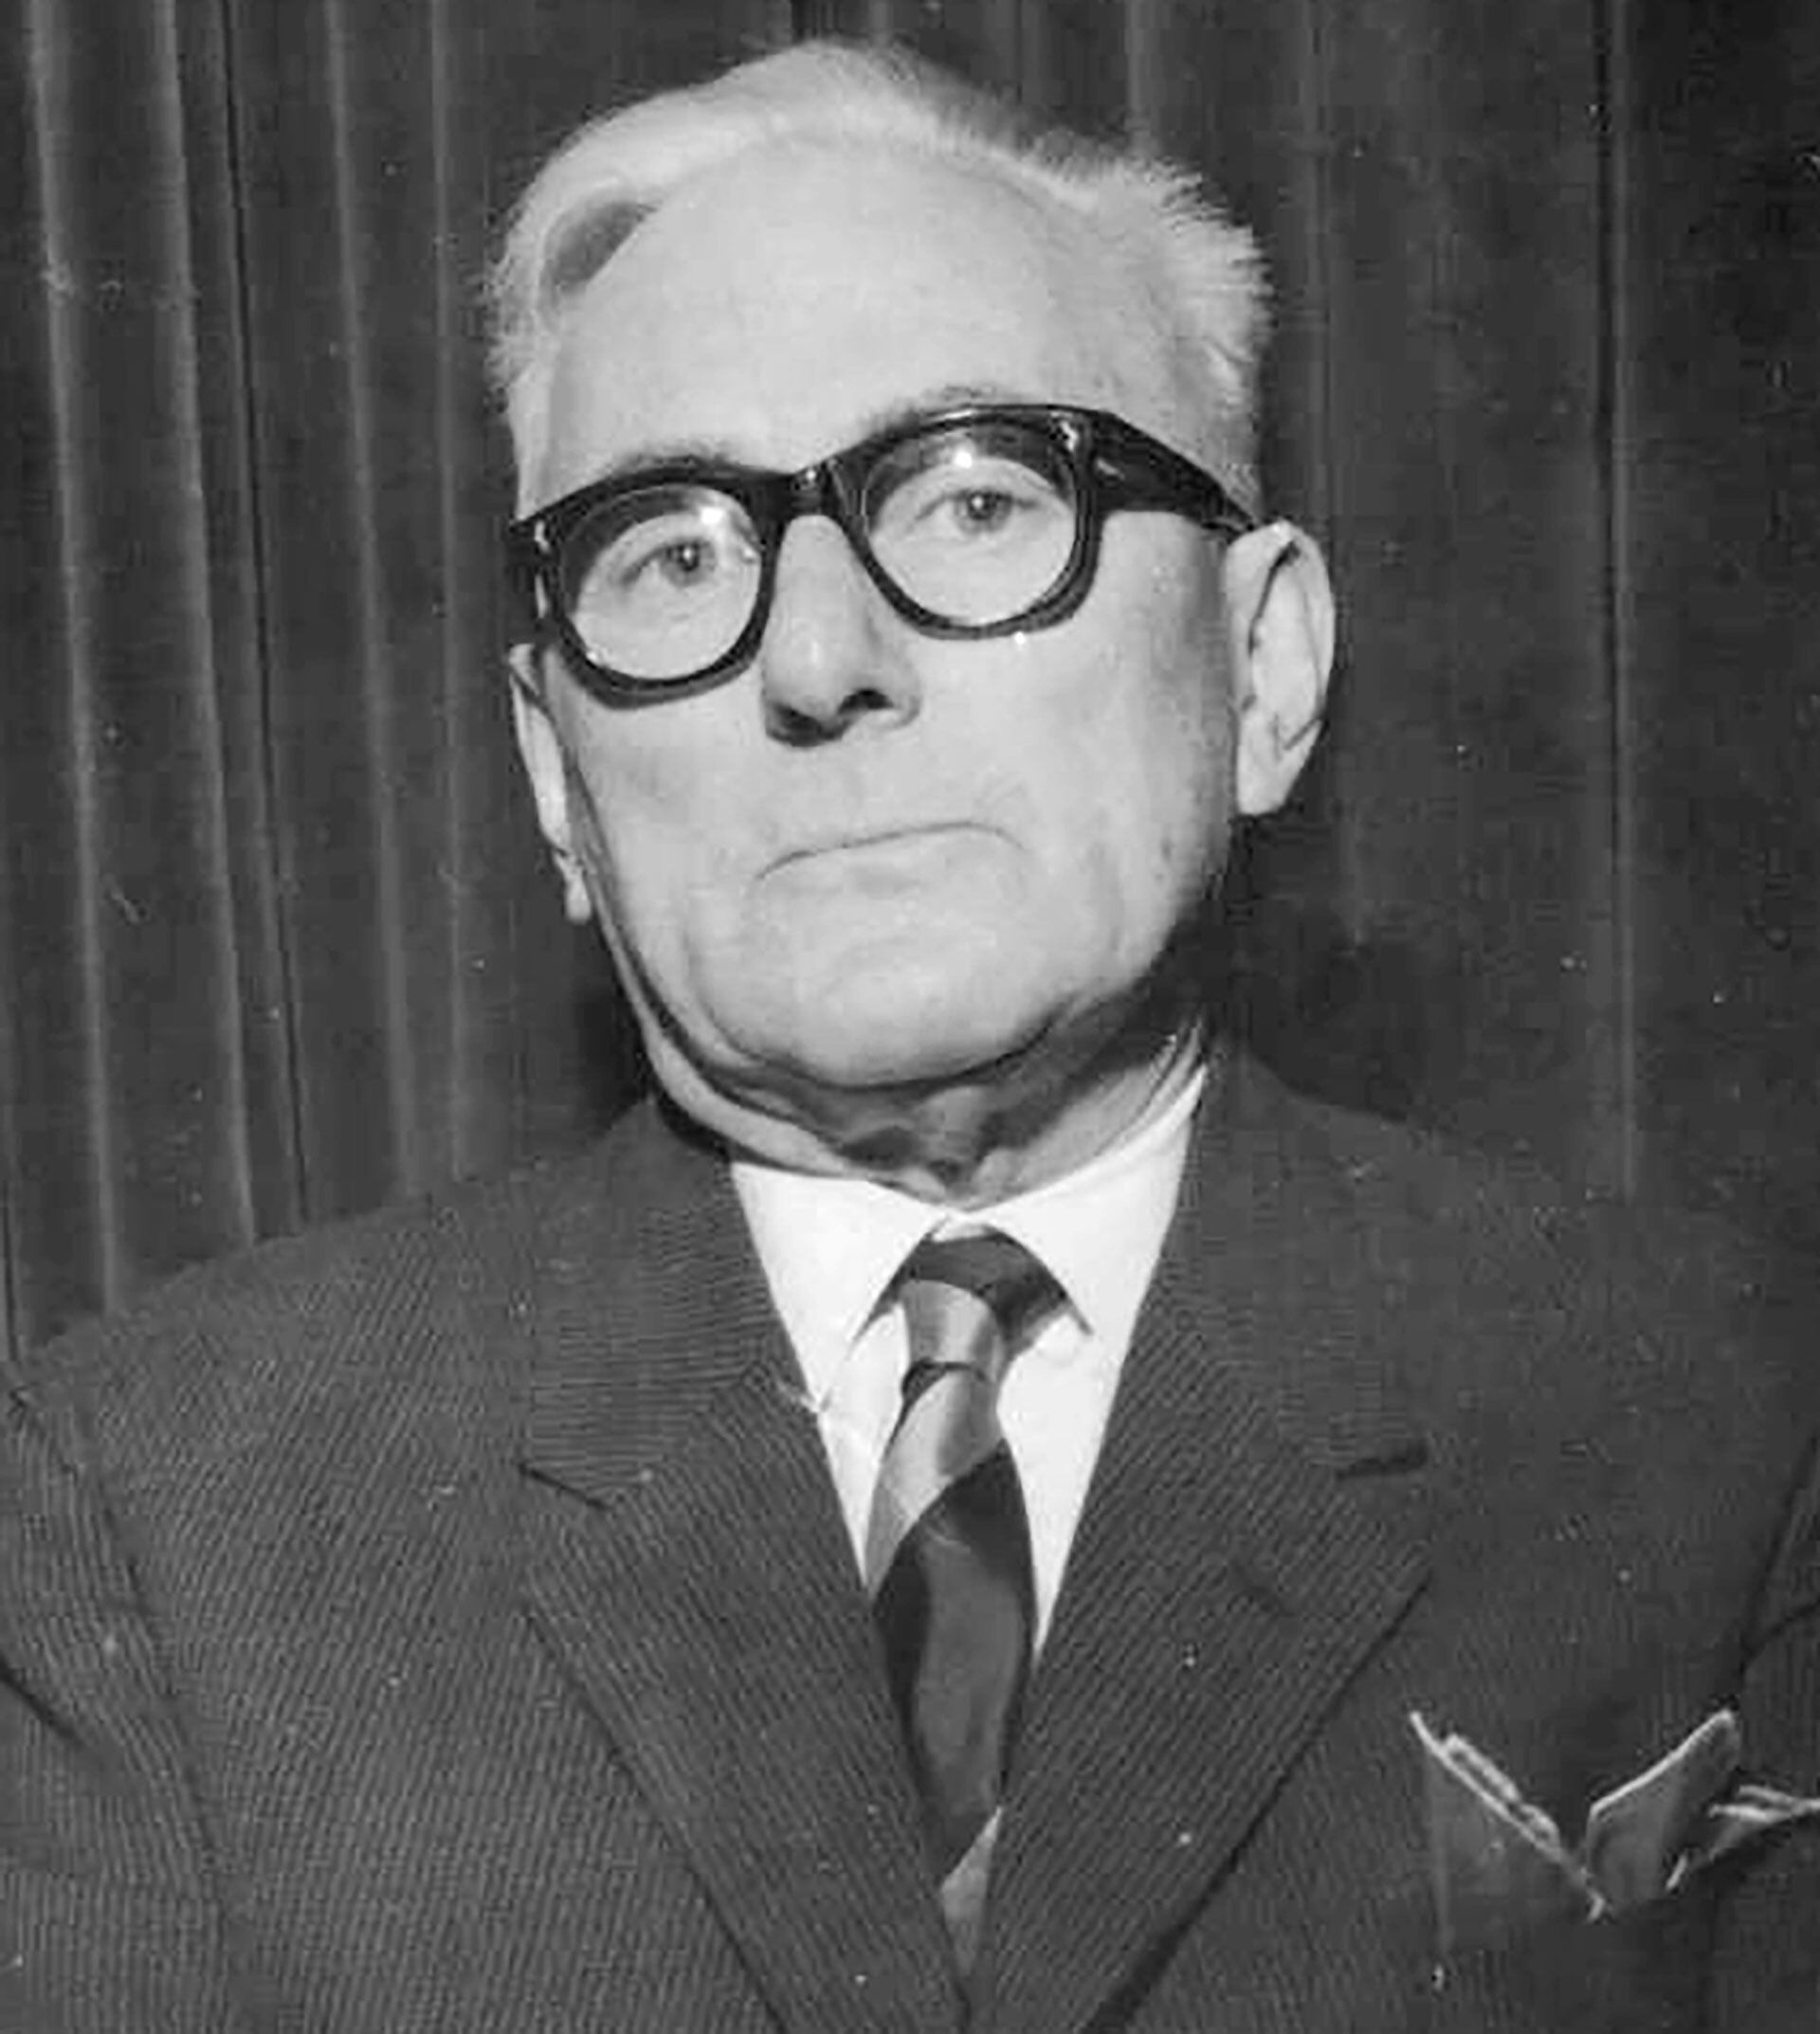 José Pedroni (1988-1968)